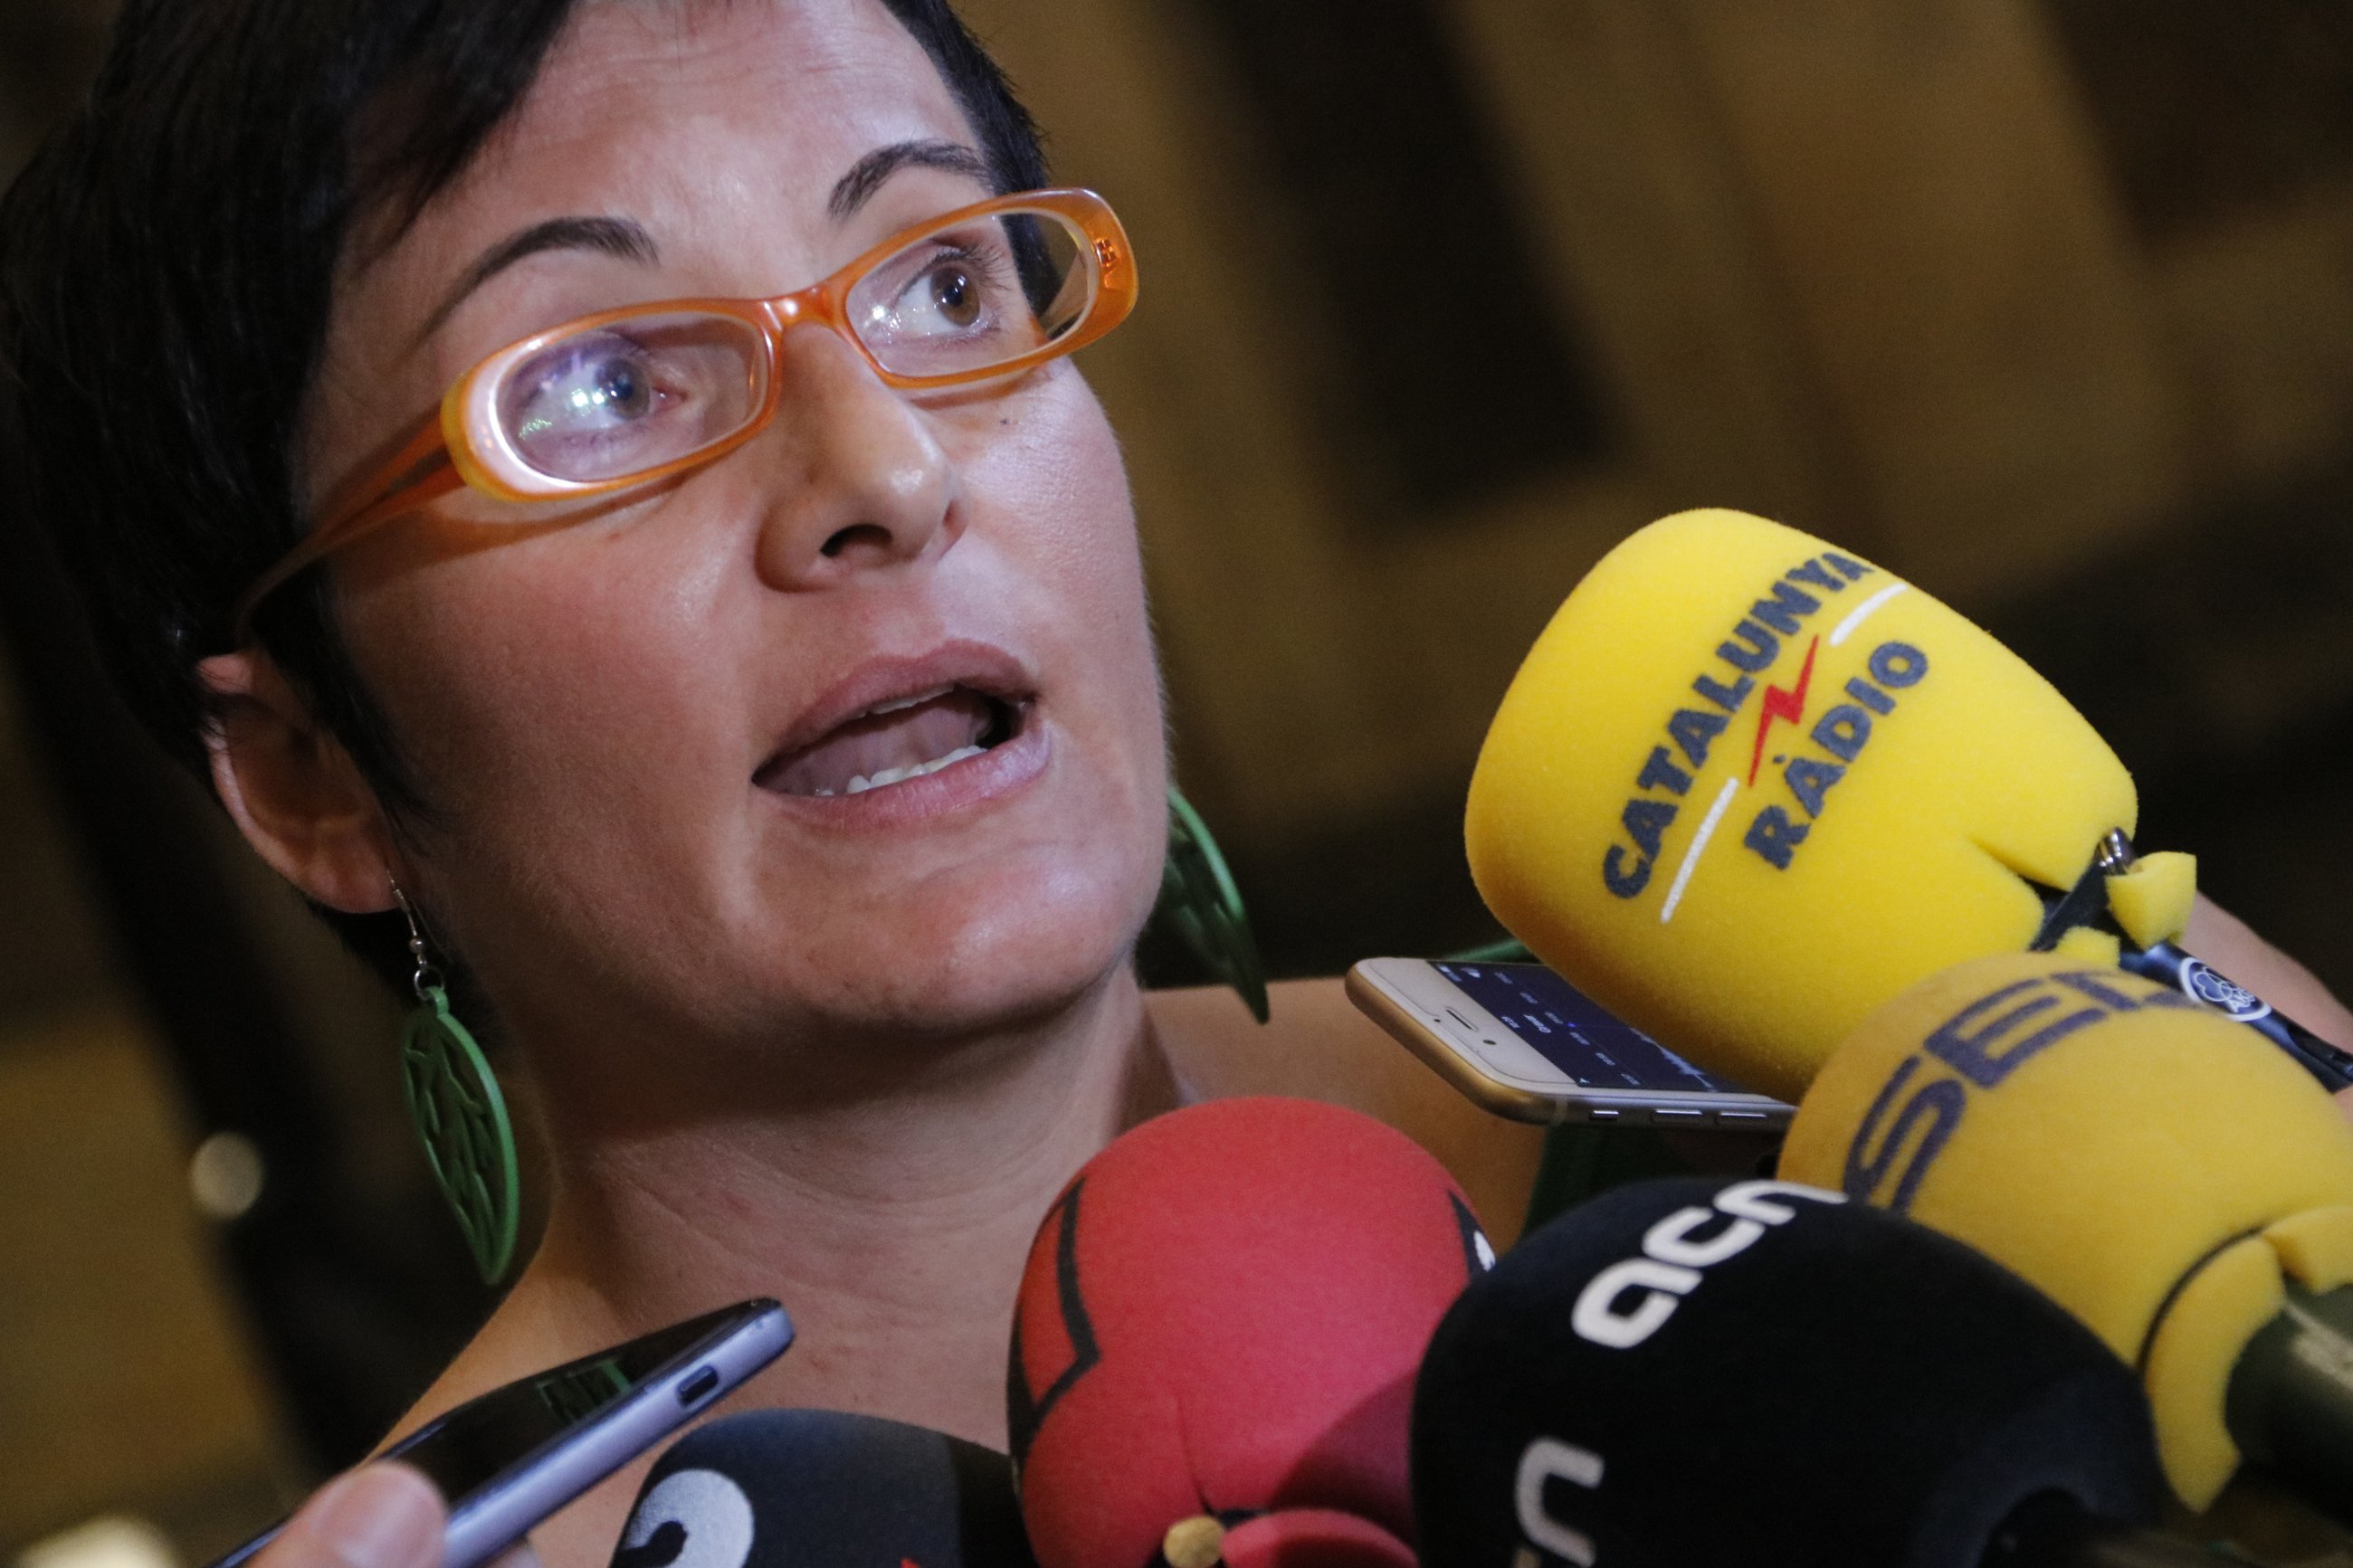 Un editorial de 'La Vanguardia' a favor de l’statu quo encén les xarxes